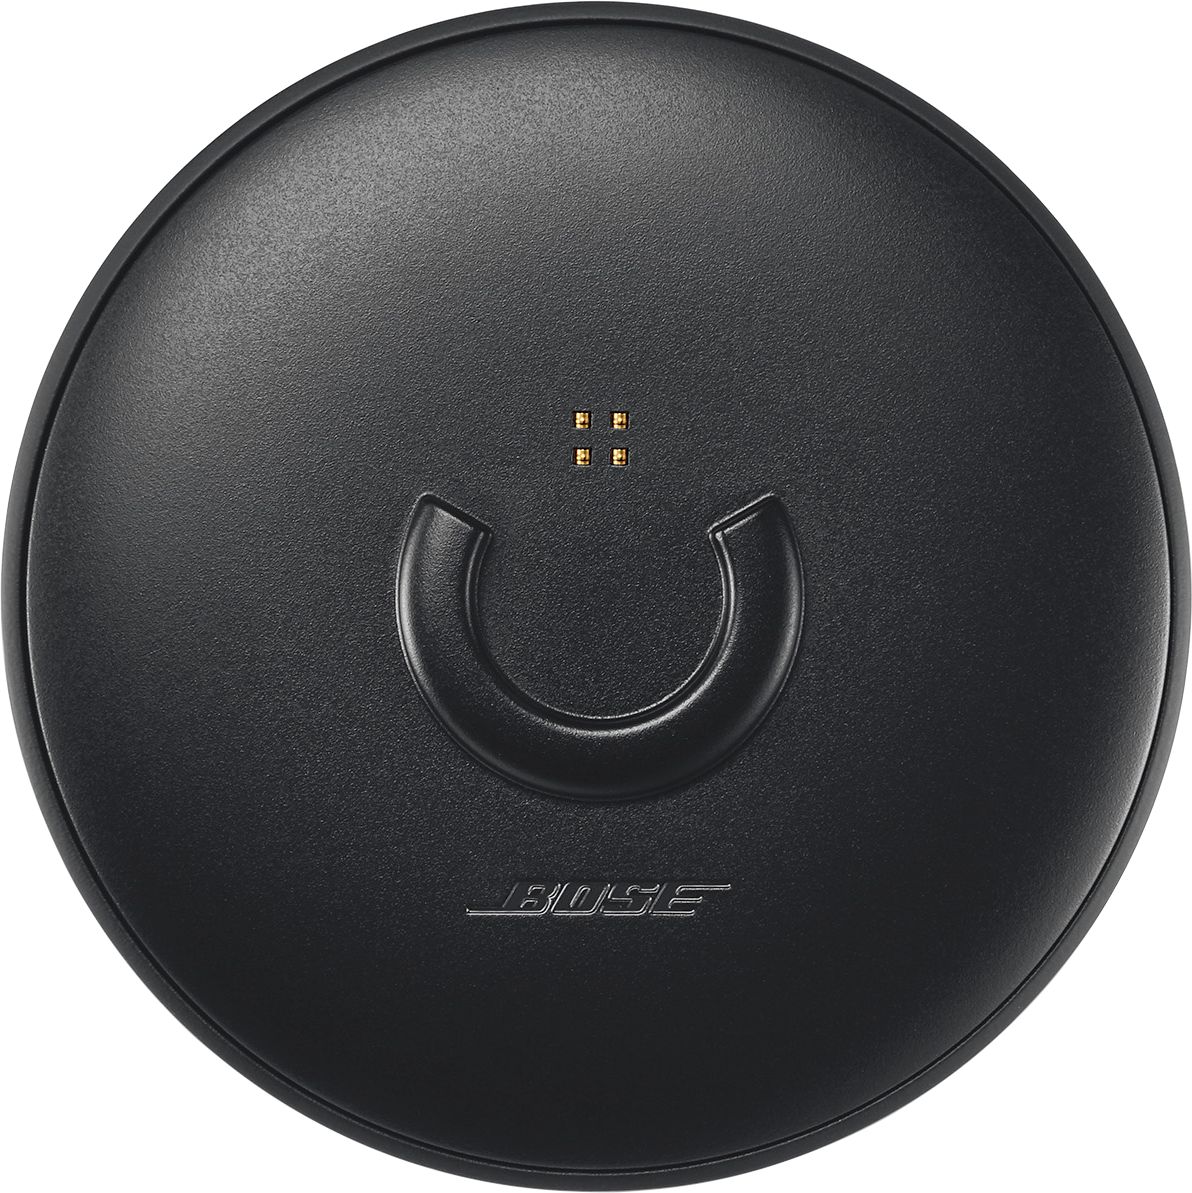 Bose SoundLink Revolve Portable Speaker Charging Dock Black 782298-0010 -  Best Buy